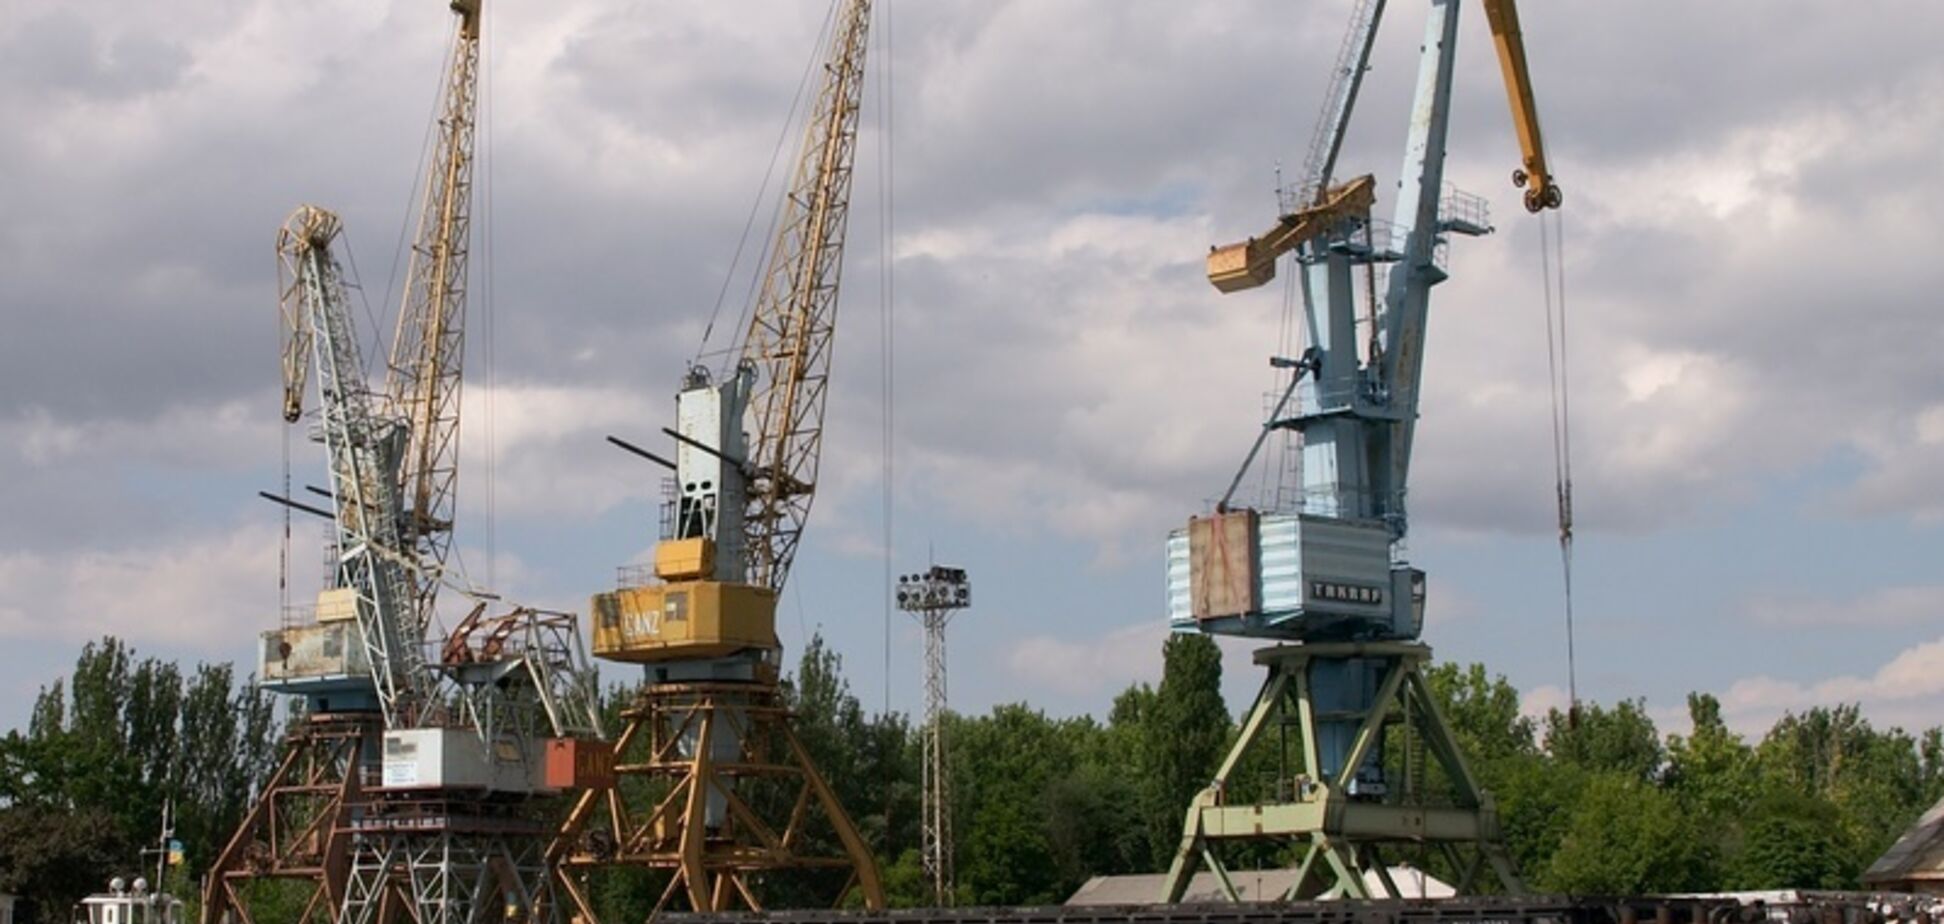 Усть-Дунайский порт удалось продать в 3 раза дороже стартовой цены за счет серьезной конкуренции со стороны Кропачева и Мазепы